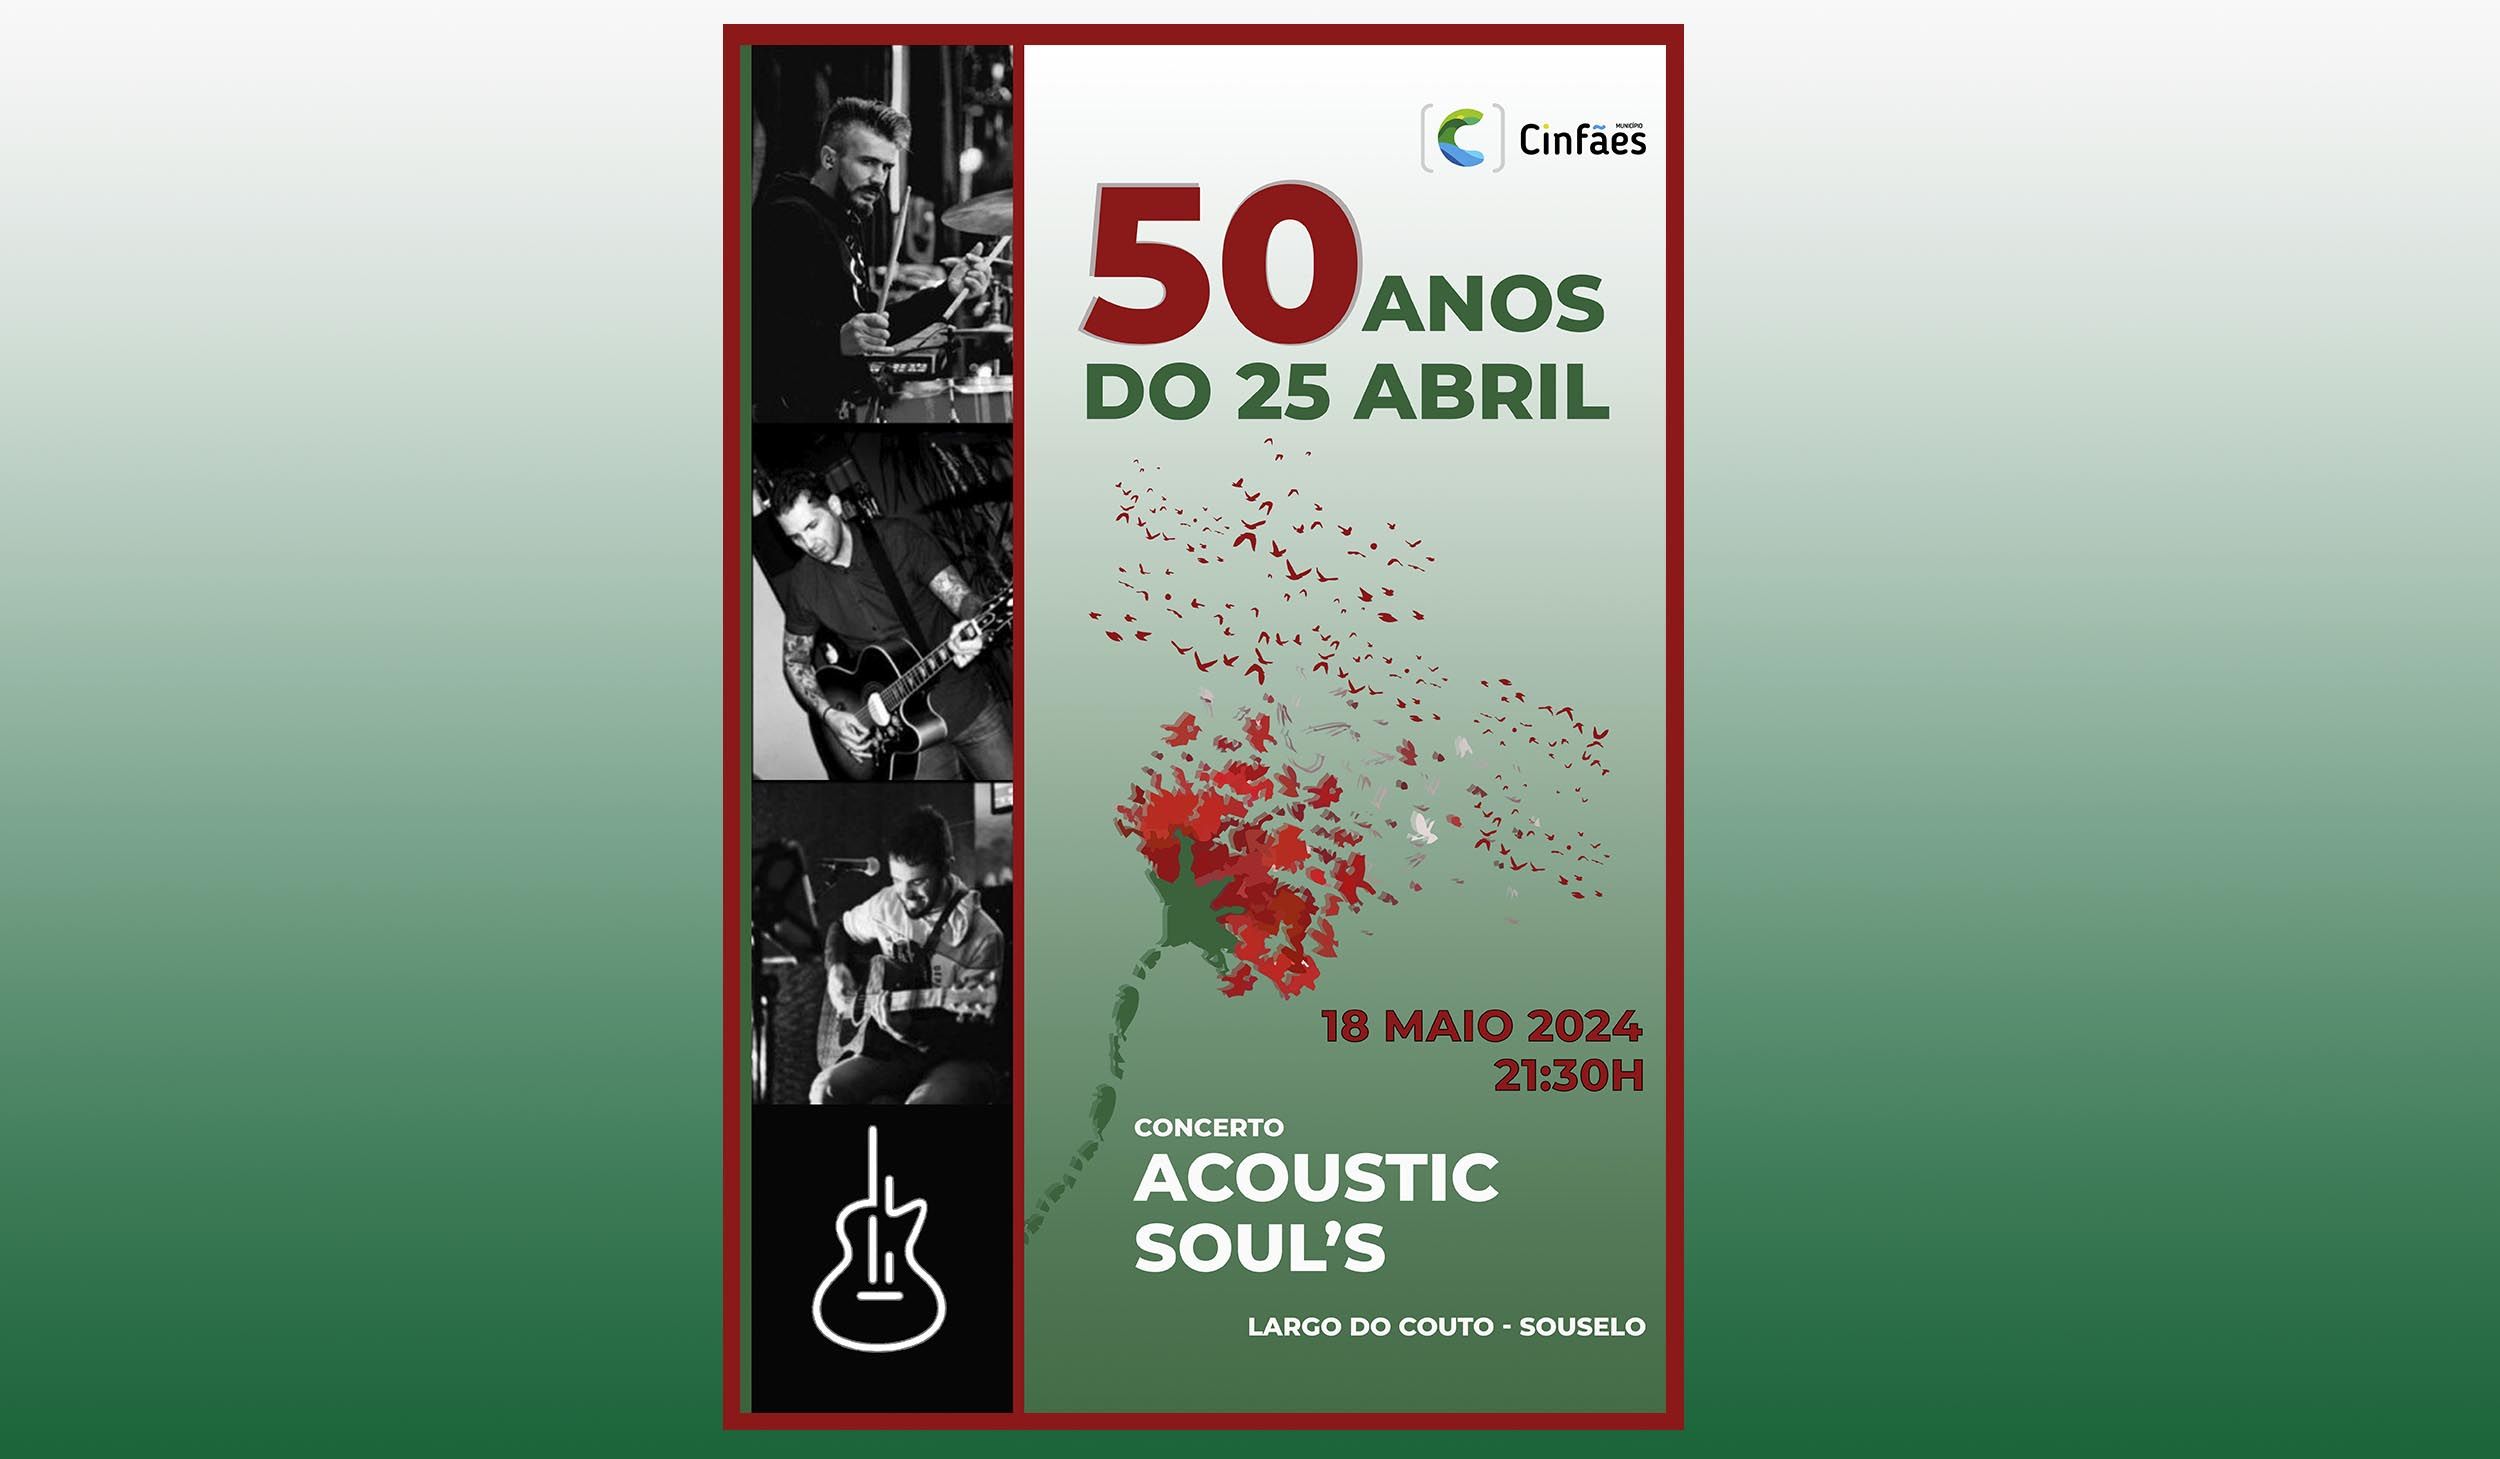 Acoustic Soul’s em Souselo